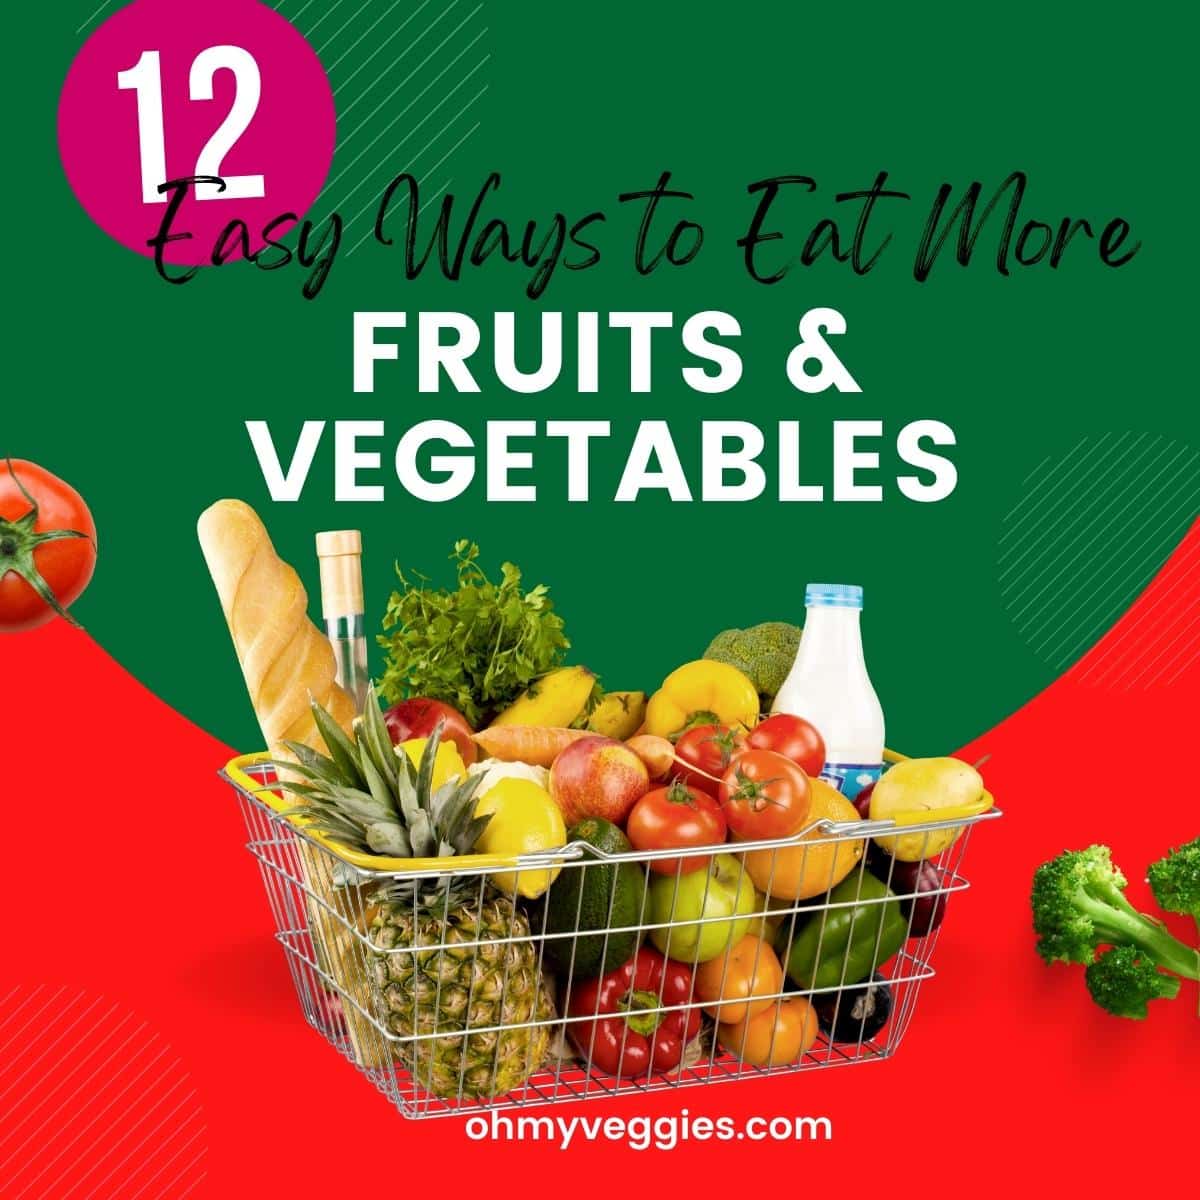 How to Eat More Fruits & Veggies